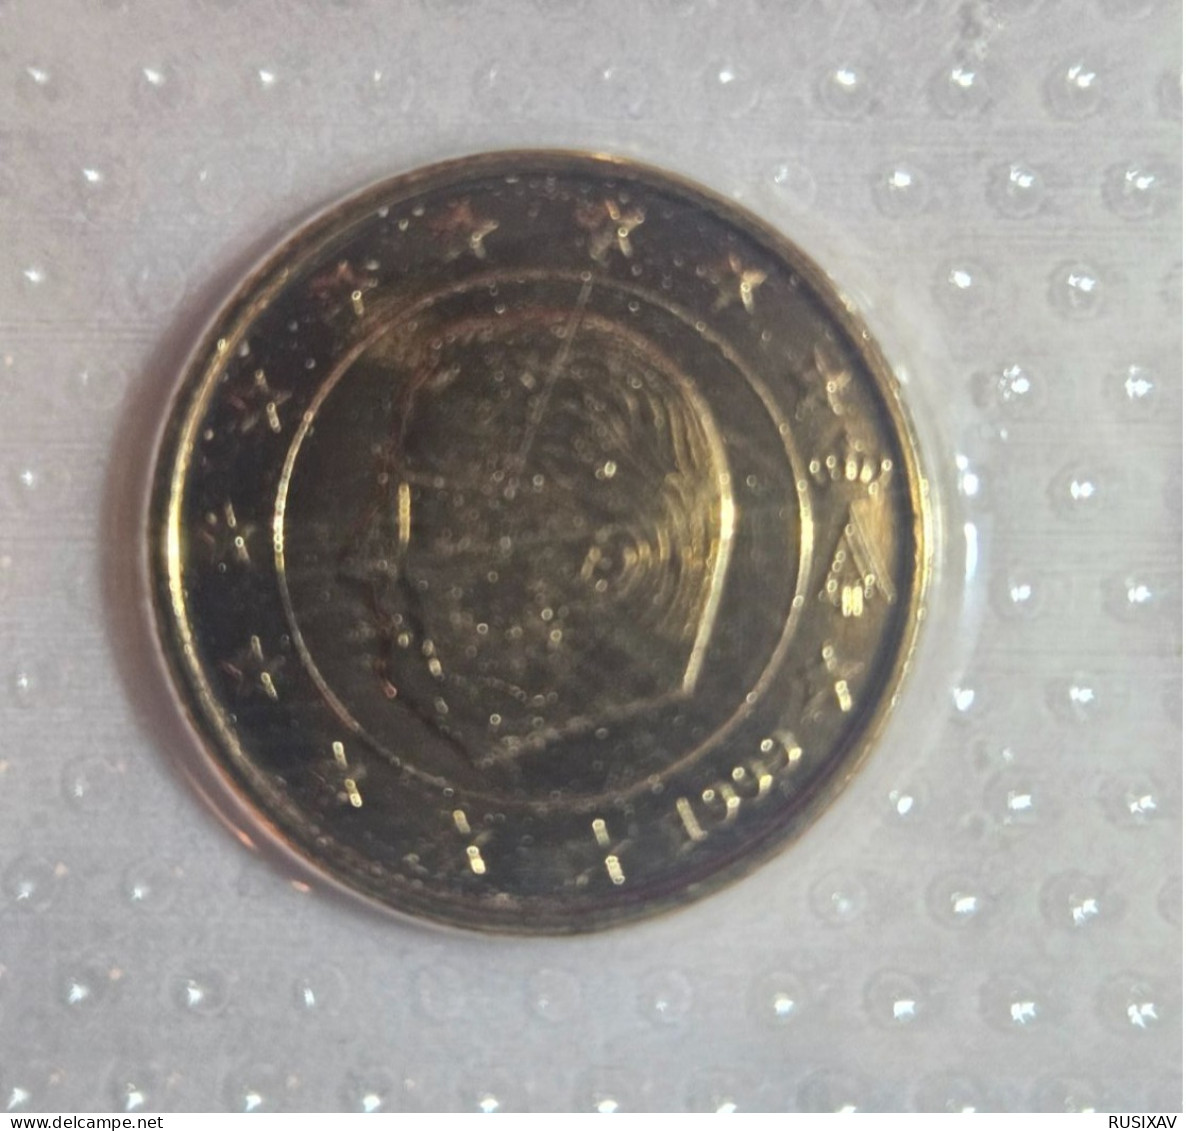 Belgique Série euros complète vergoldet - dorée 24 carats